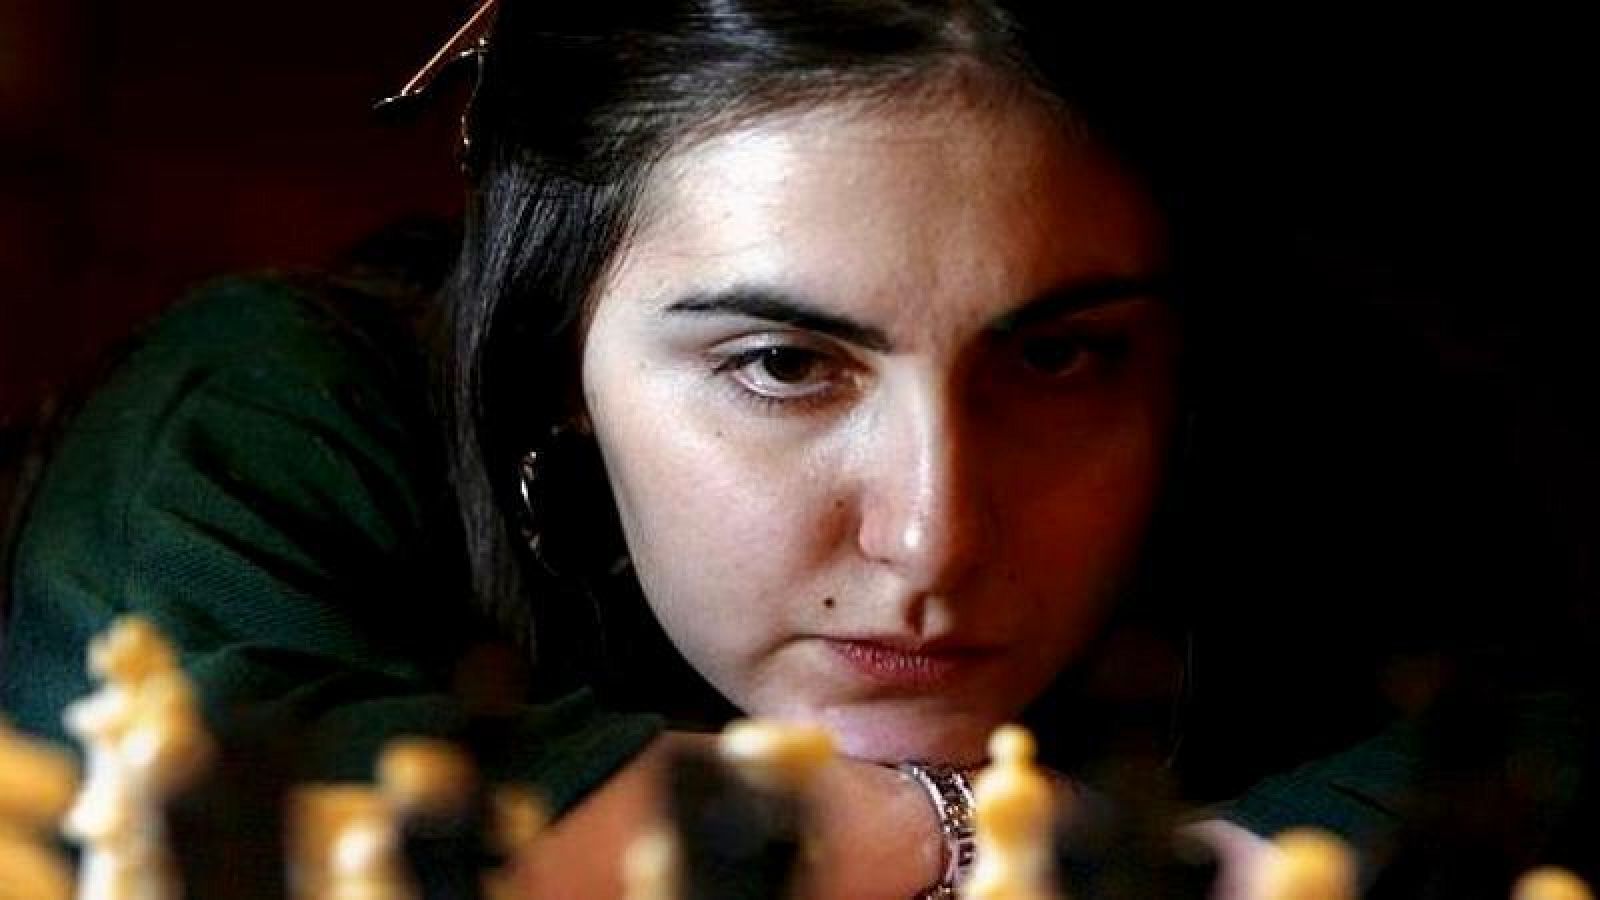  No es un día cualquiera - Jaque mate al ajedrez - Olga Viza - 'El podio' - 5/12/2020 - Escuchar ahora